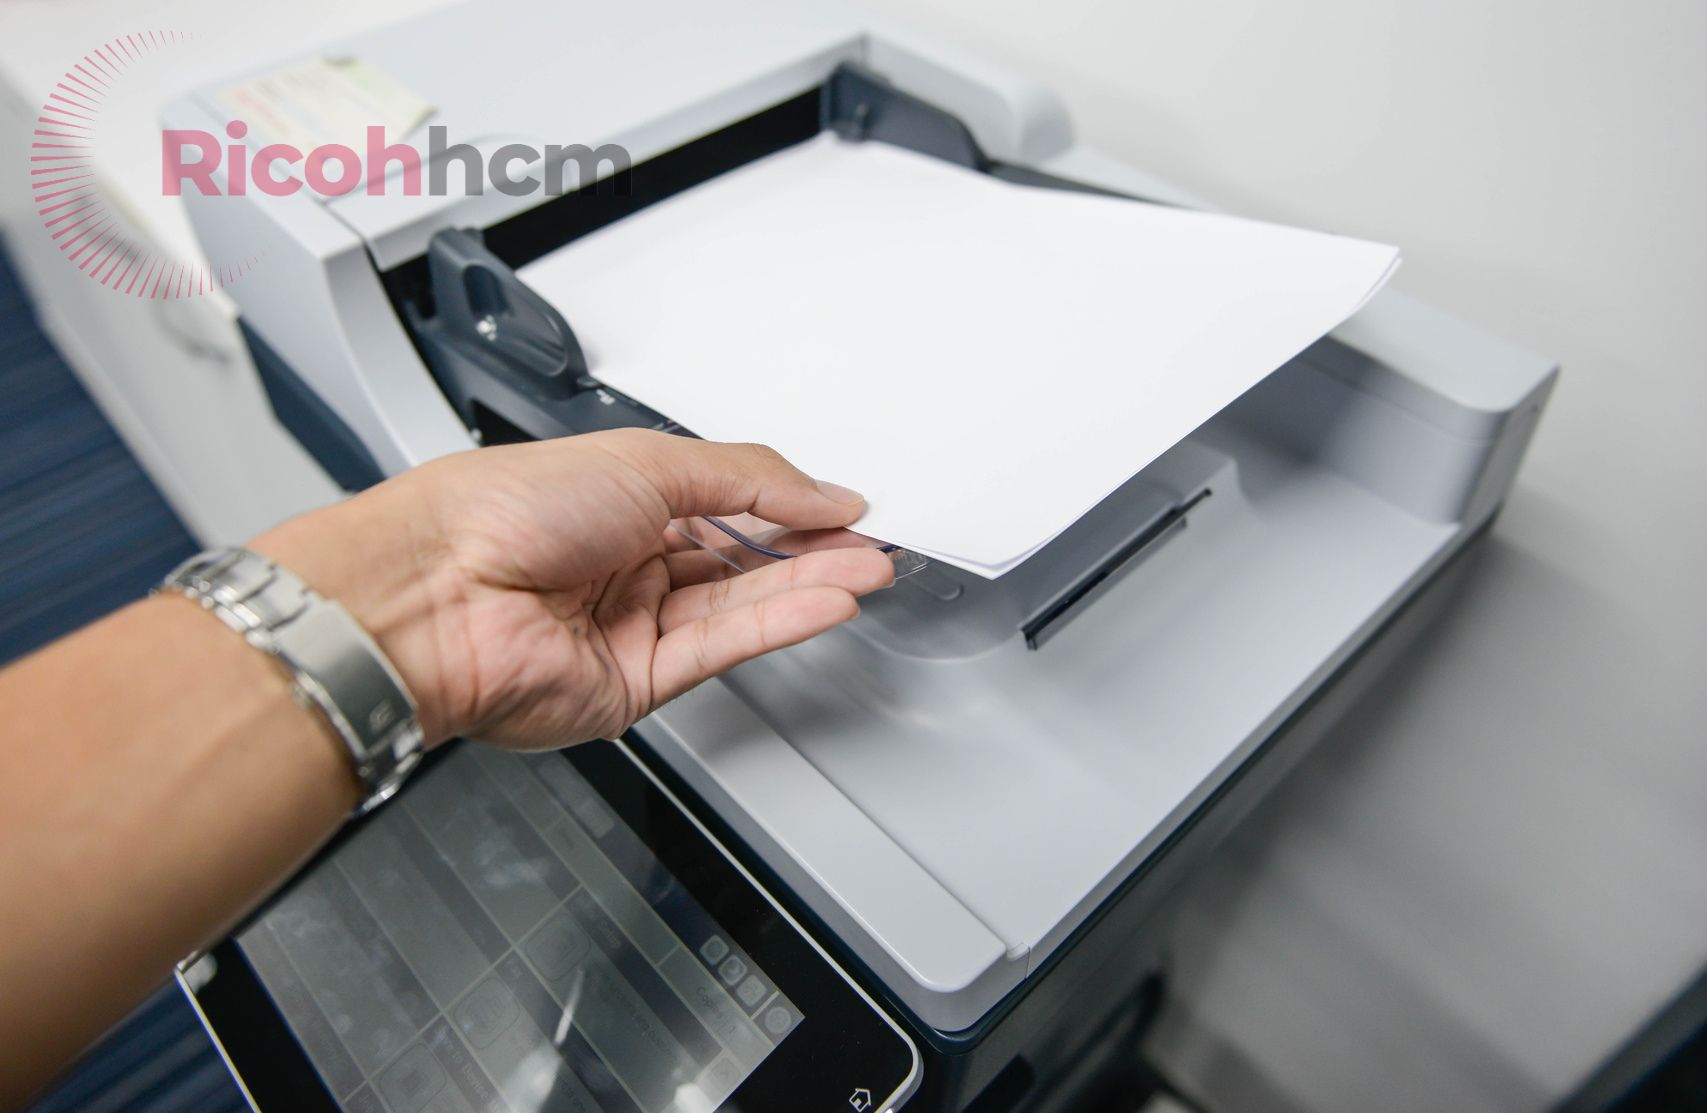 Mặc dù có nhiều đơn vị bán máy photocopy quận 5 nhưng vẫn còn một số cơ sở không uy tín cung cấp những mẫu máy kém chất lượng khiến khách hàng cảm thấy hoang mang